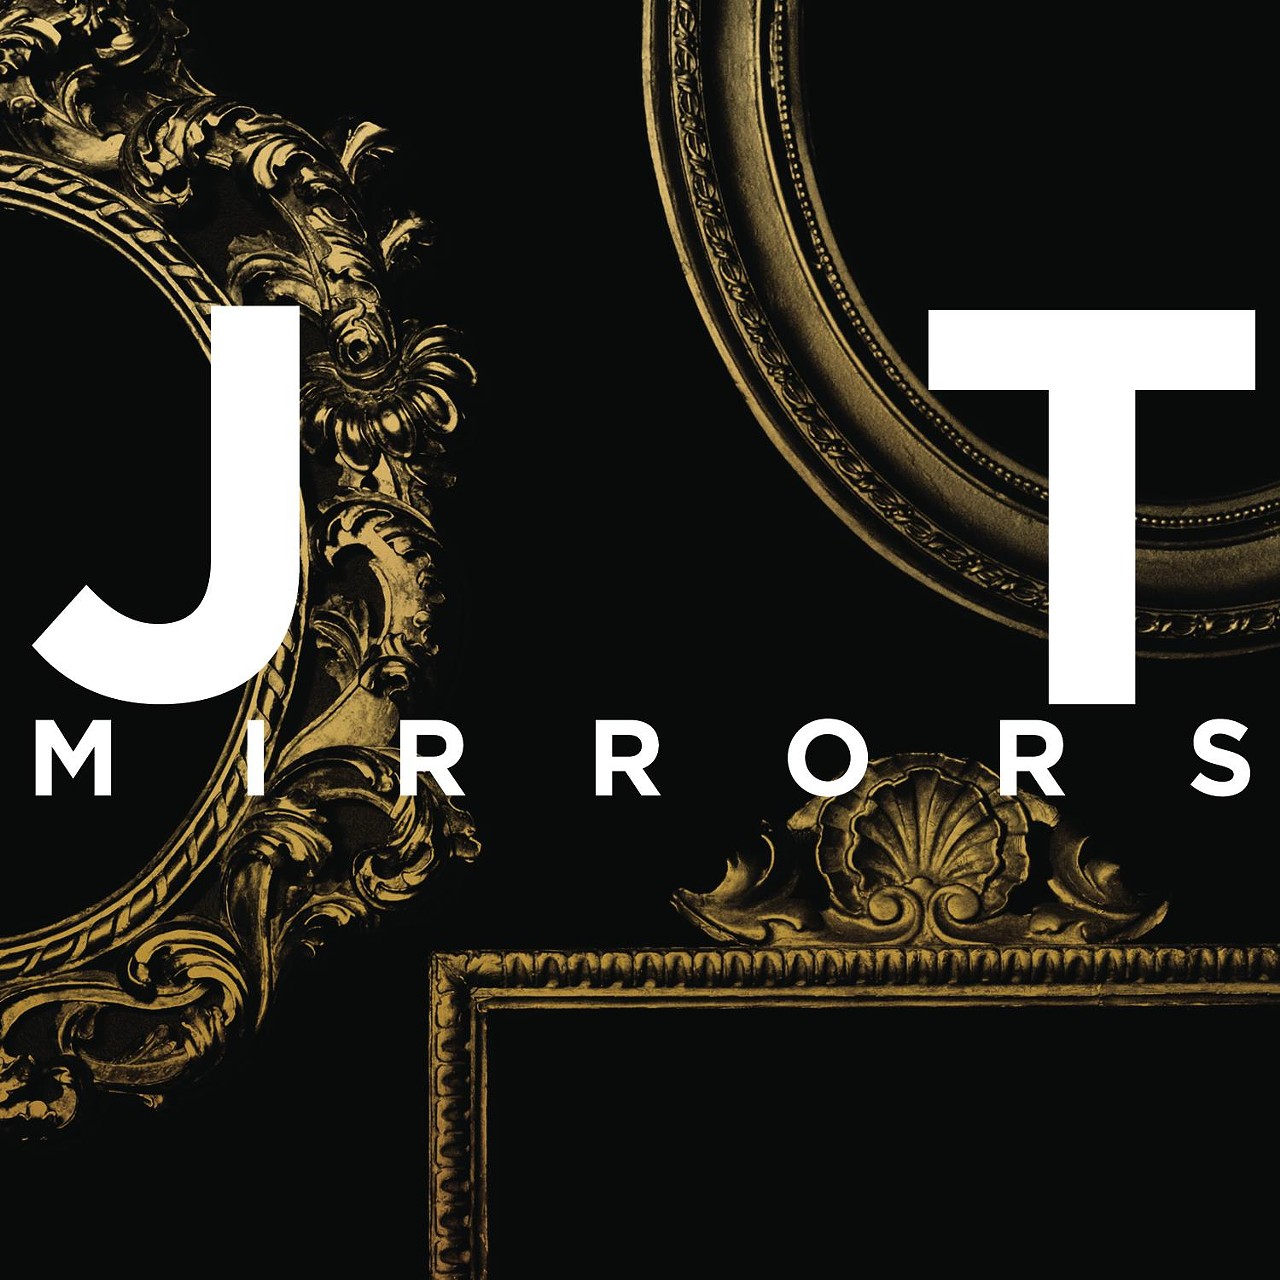 11. Justin Timberlake, "Mirrors" (27 Votes)